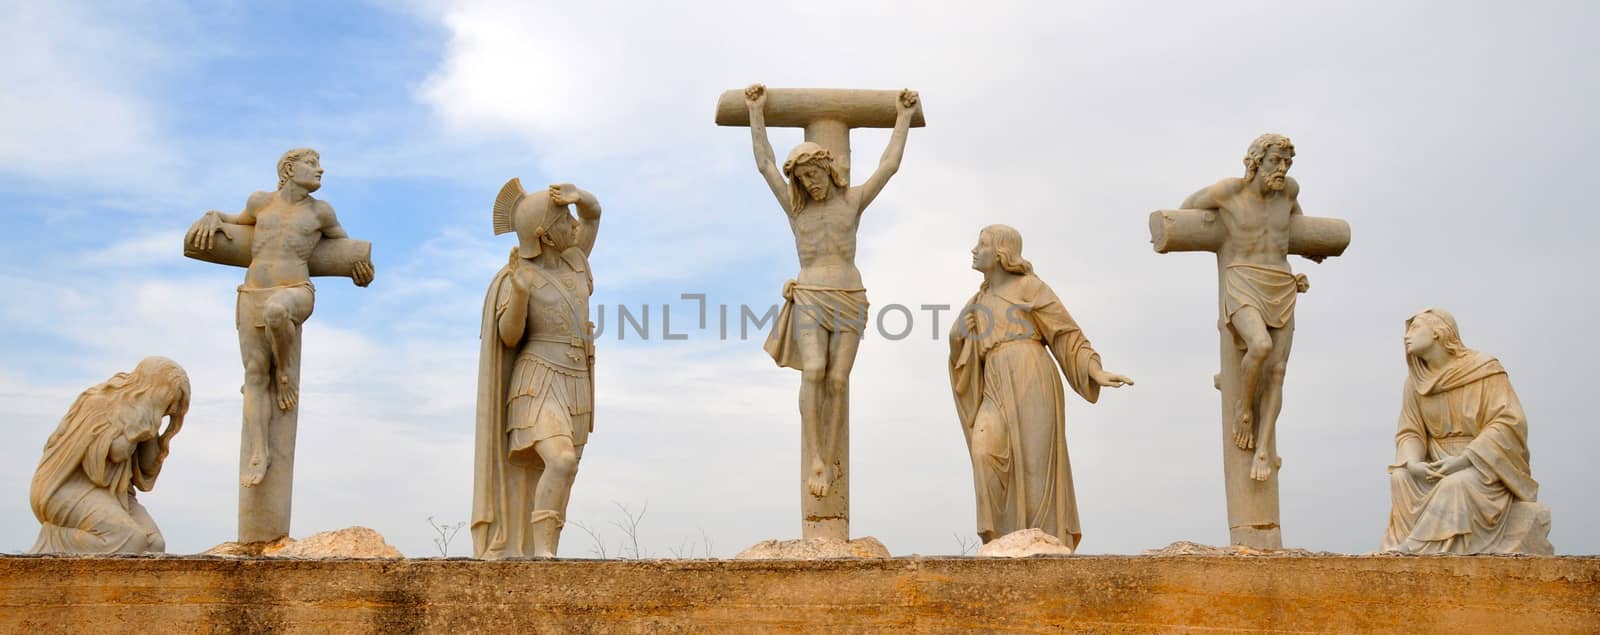 Jesus Crucifixion Statue by ignattexx